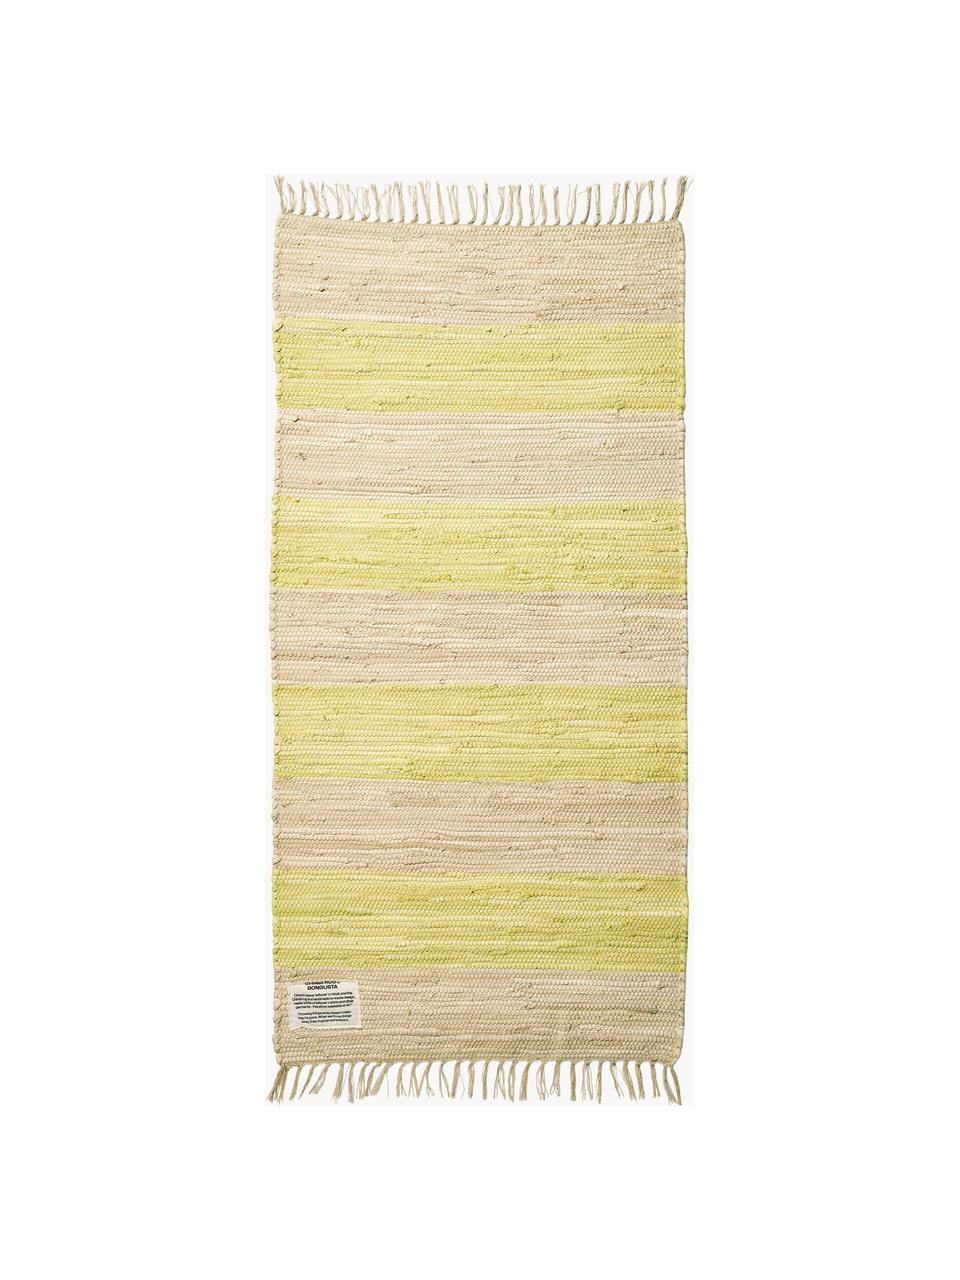 Ručně tkaný bavlněný běhoun s třásněmi Chindi, 100 % bavlna, Světle žlutá, světle béžová, Š 60 cm, D 120 cm